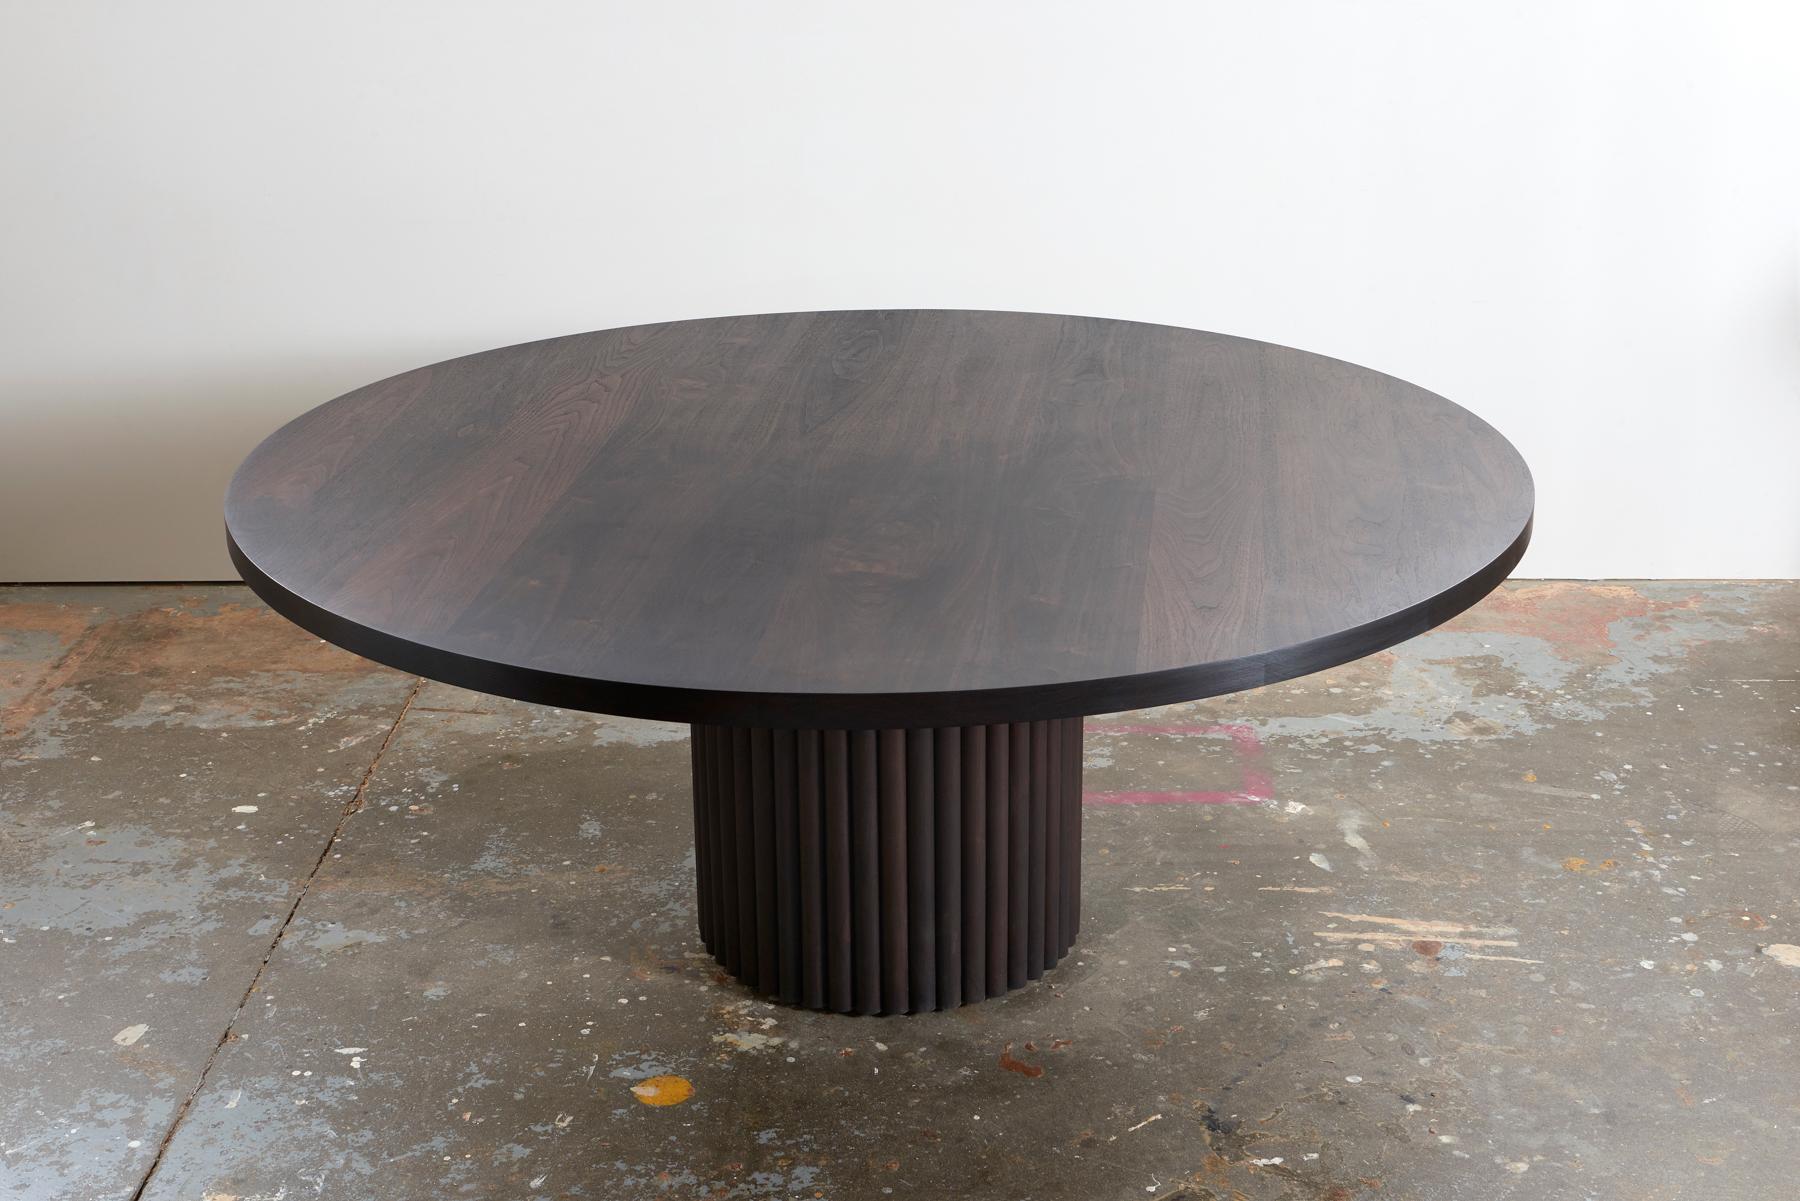 D'une audace inouïe, la table à manger de Kate Duncan est une pièce qui rend hommage à la fois à l'esthétique contemporaine et à l'architecture brutaliste. Une grande colonne de cannelures taillées et un plateau en bois massif massif créent une